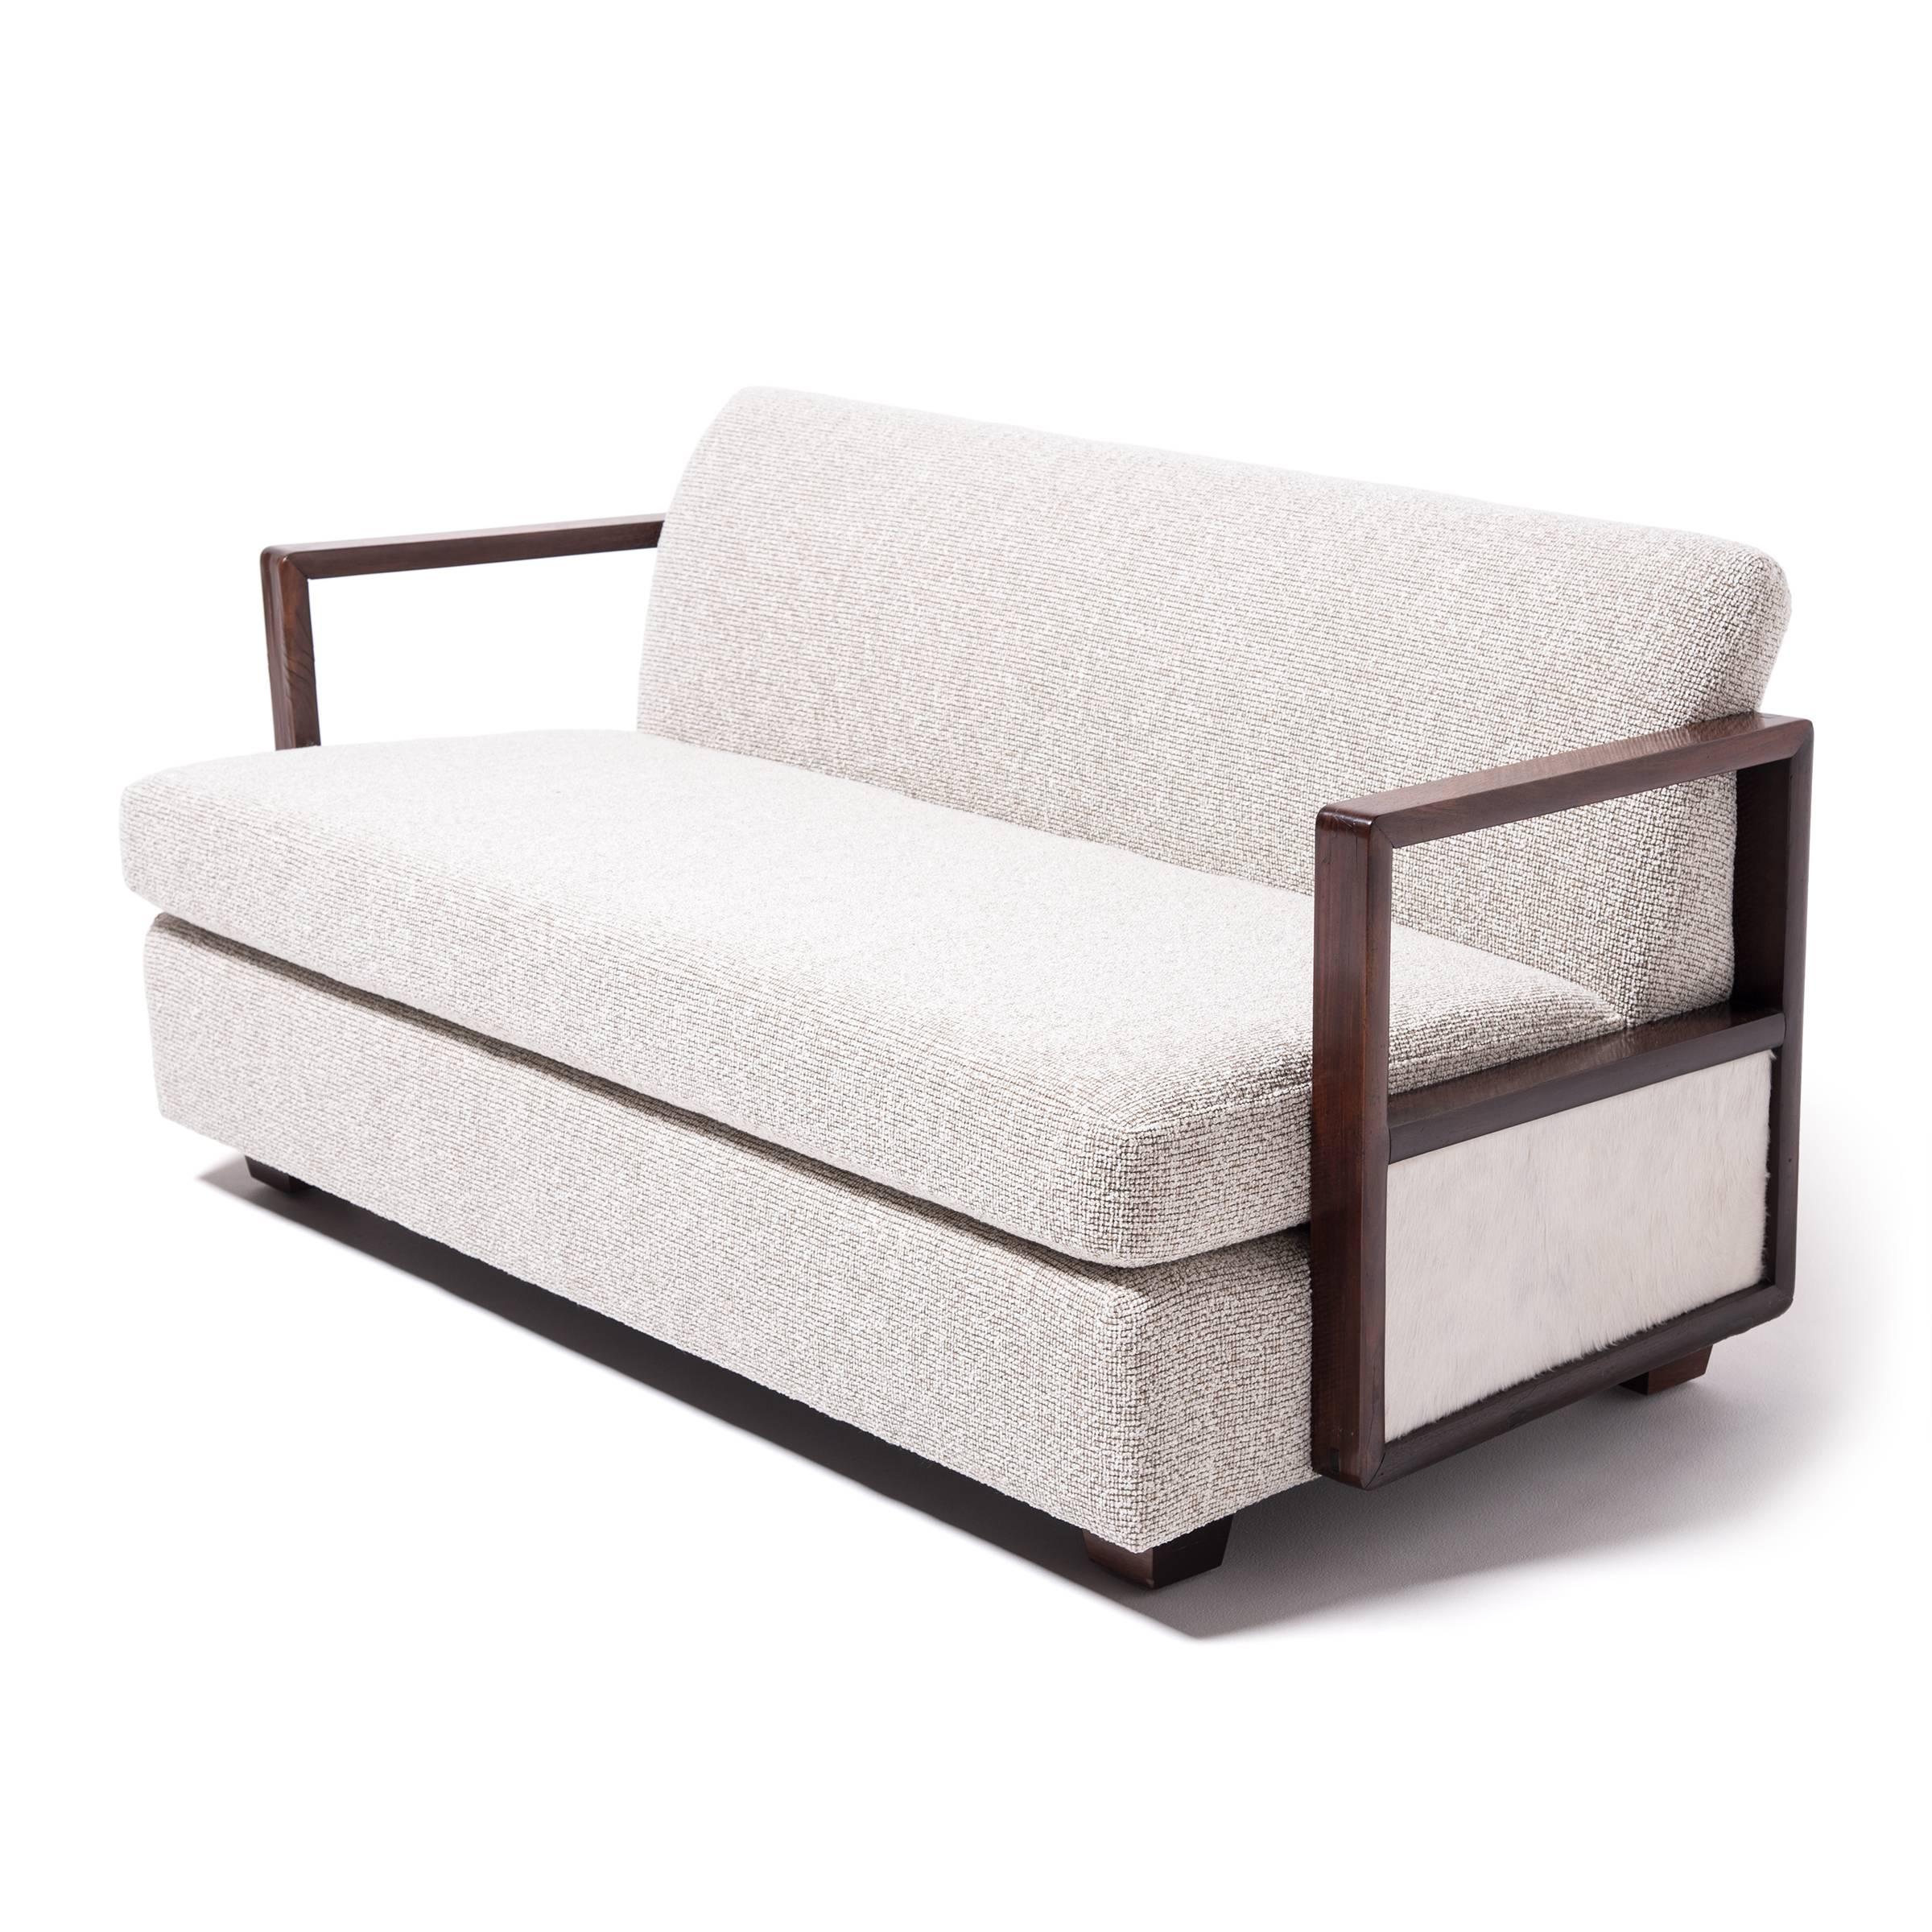 chinese sofa design